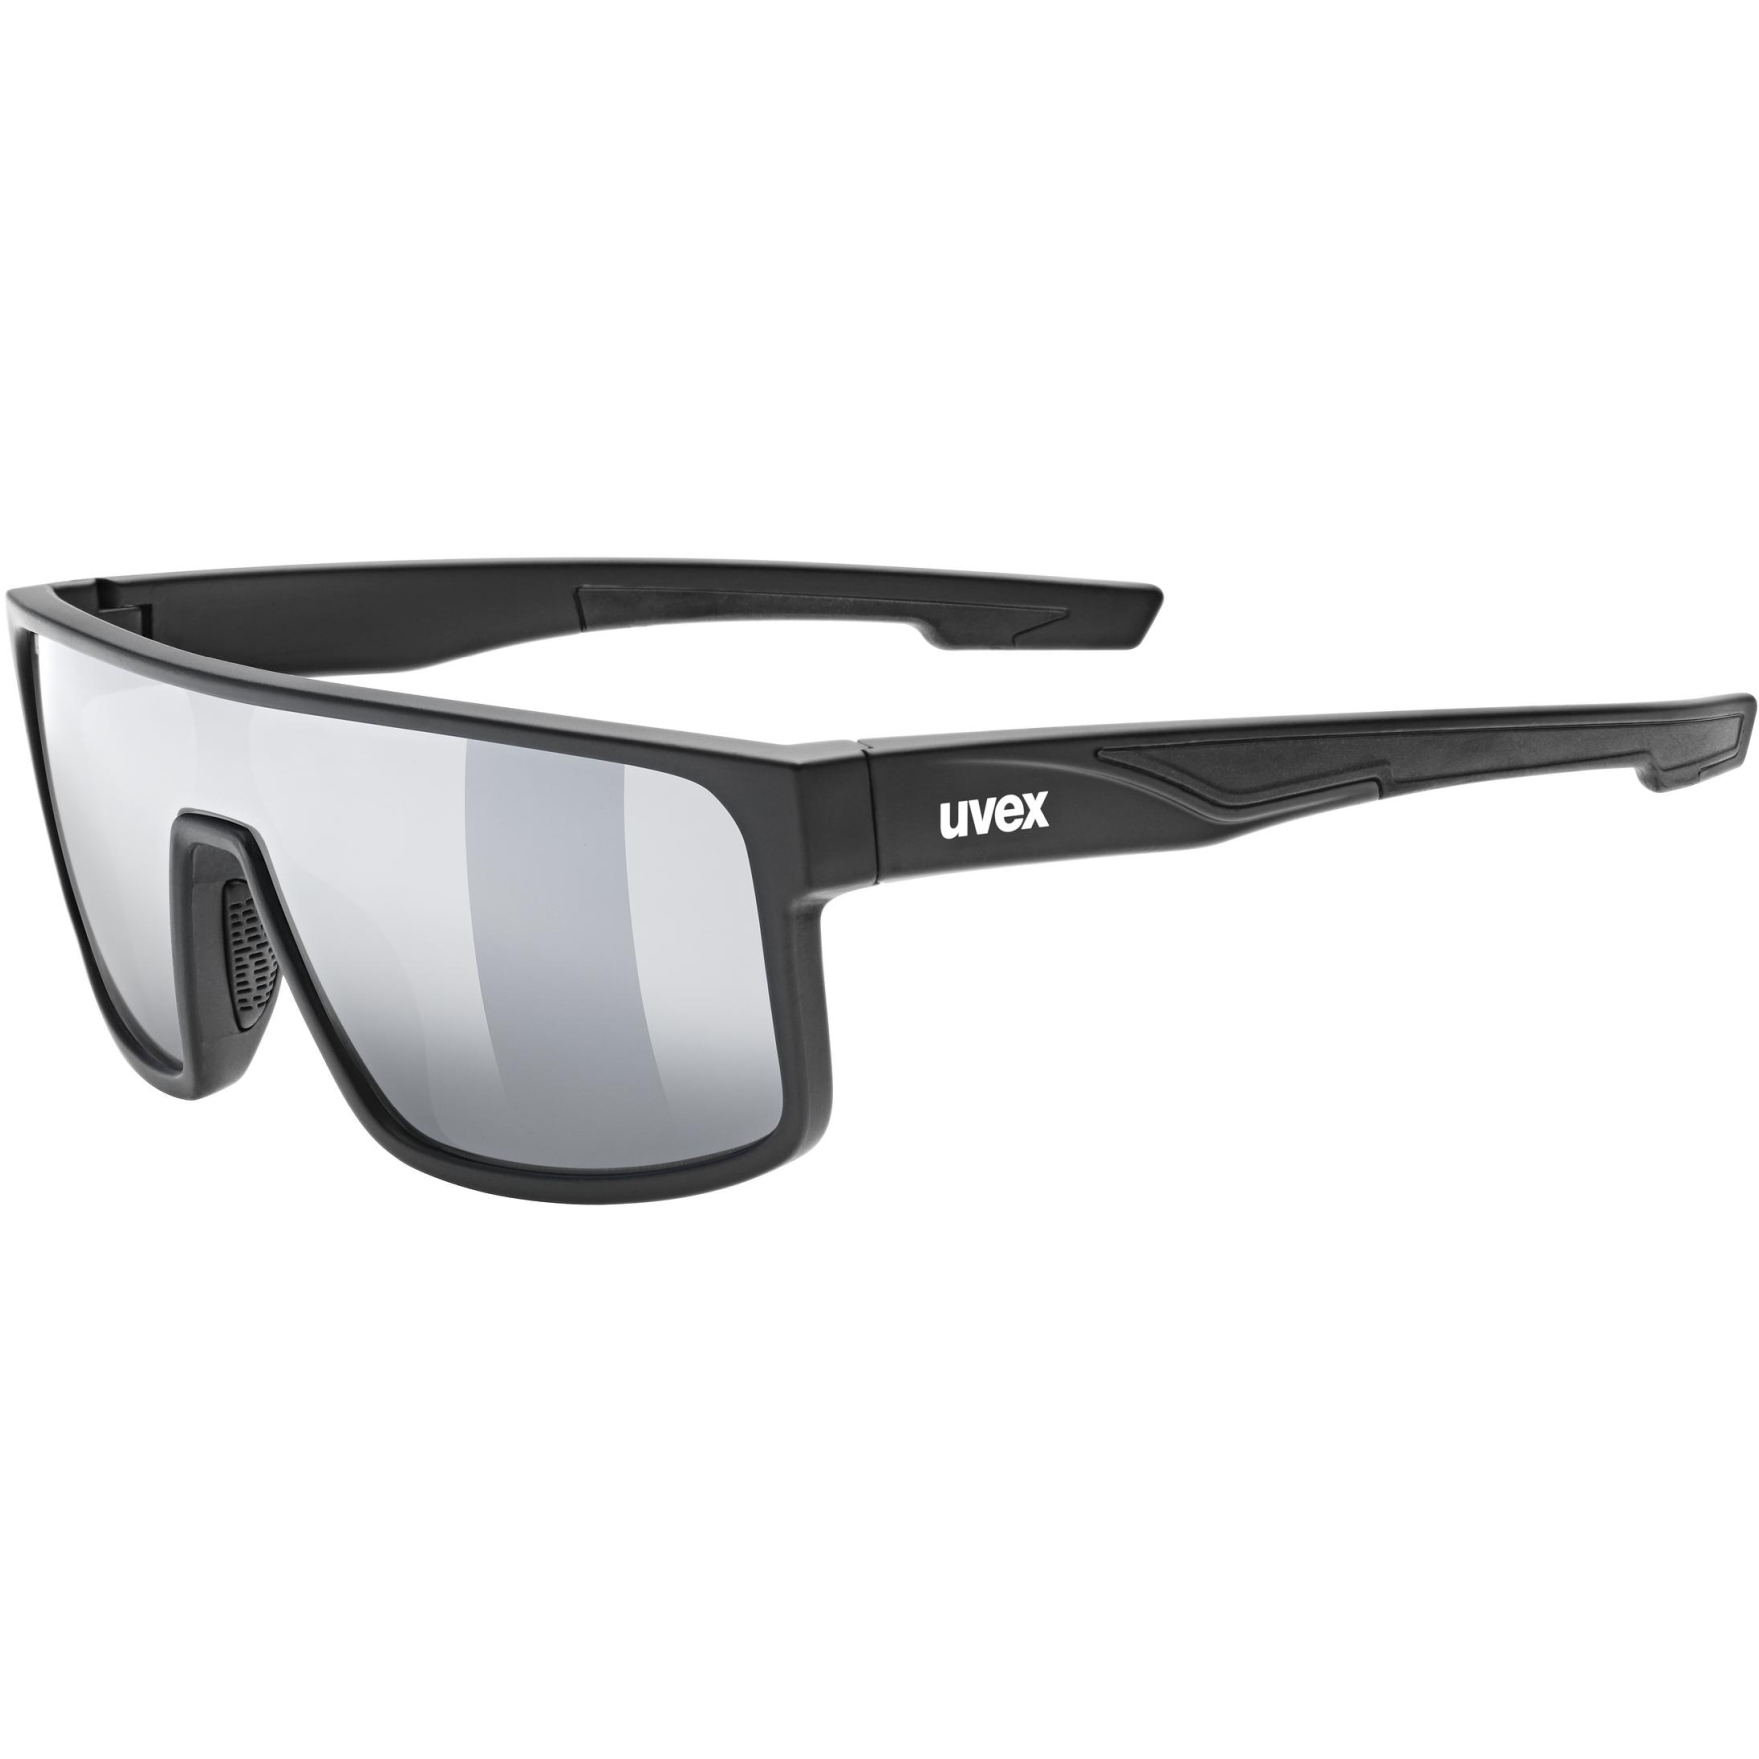 Produktbild von Uvex LGL 51 Brille - black matt/mirror silver